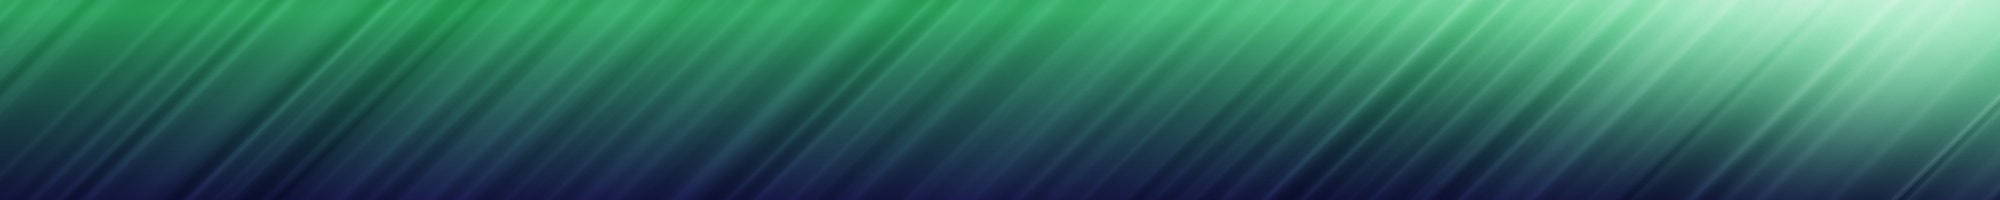 Green patterned header bar background image